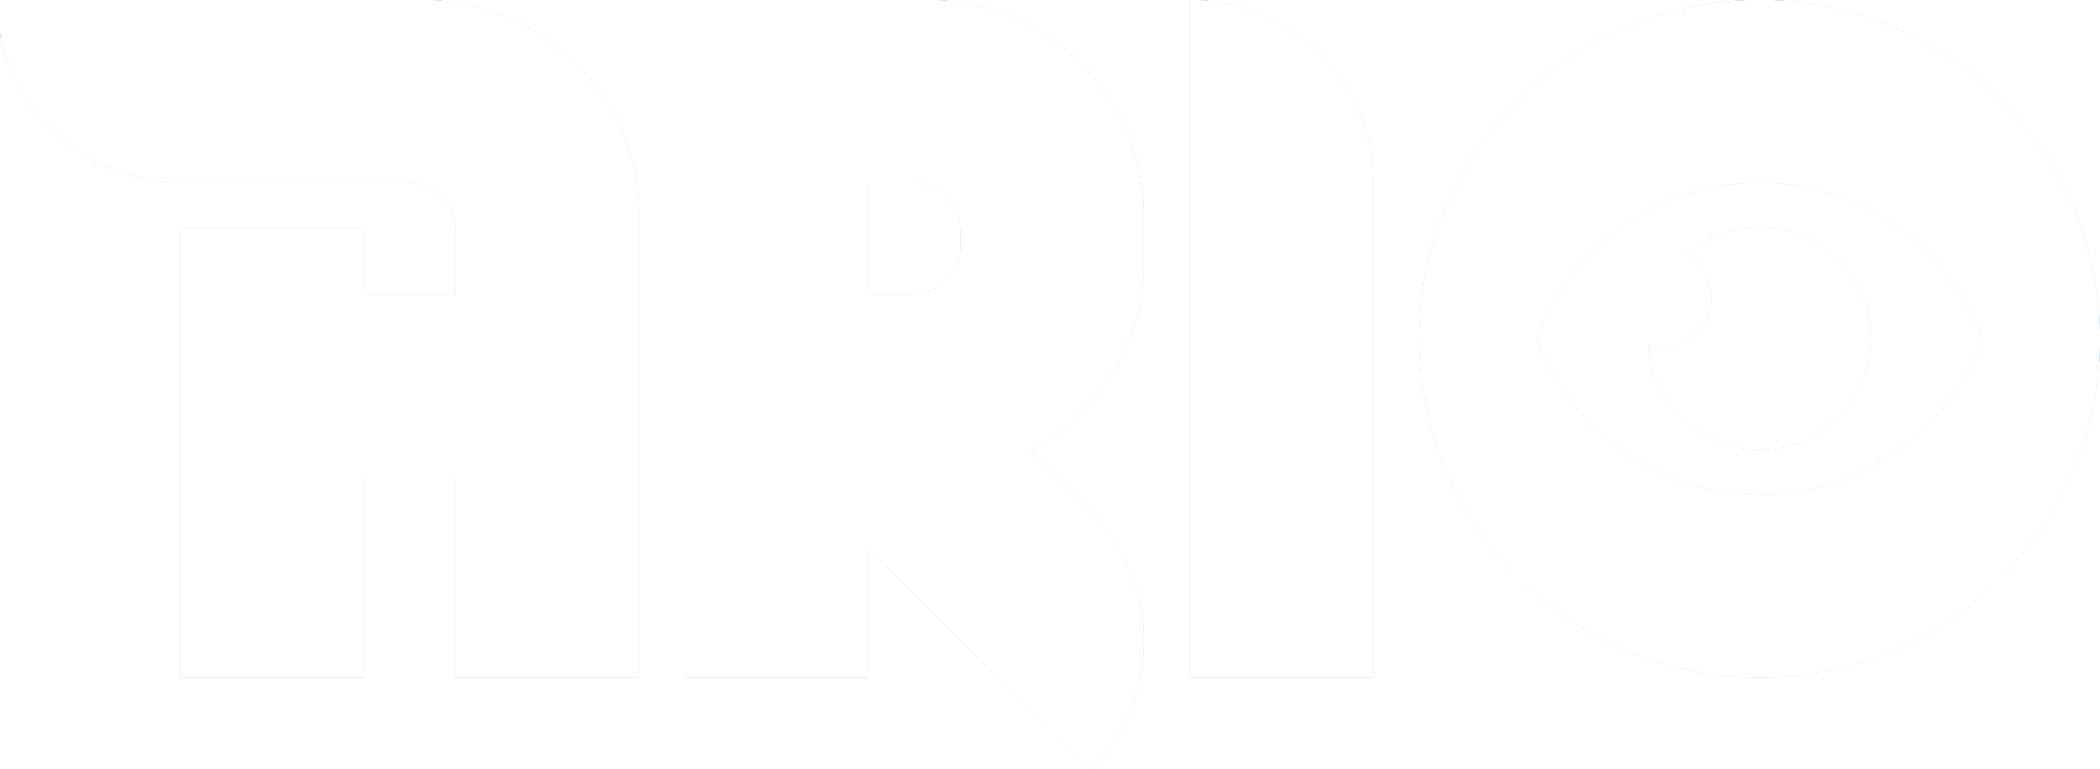 ario white logo